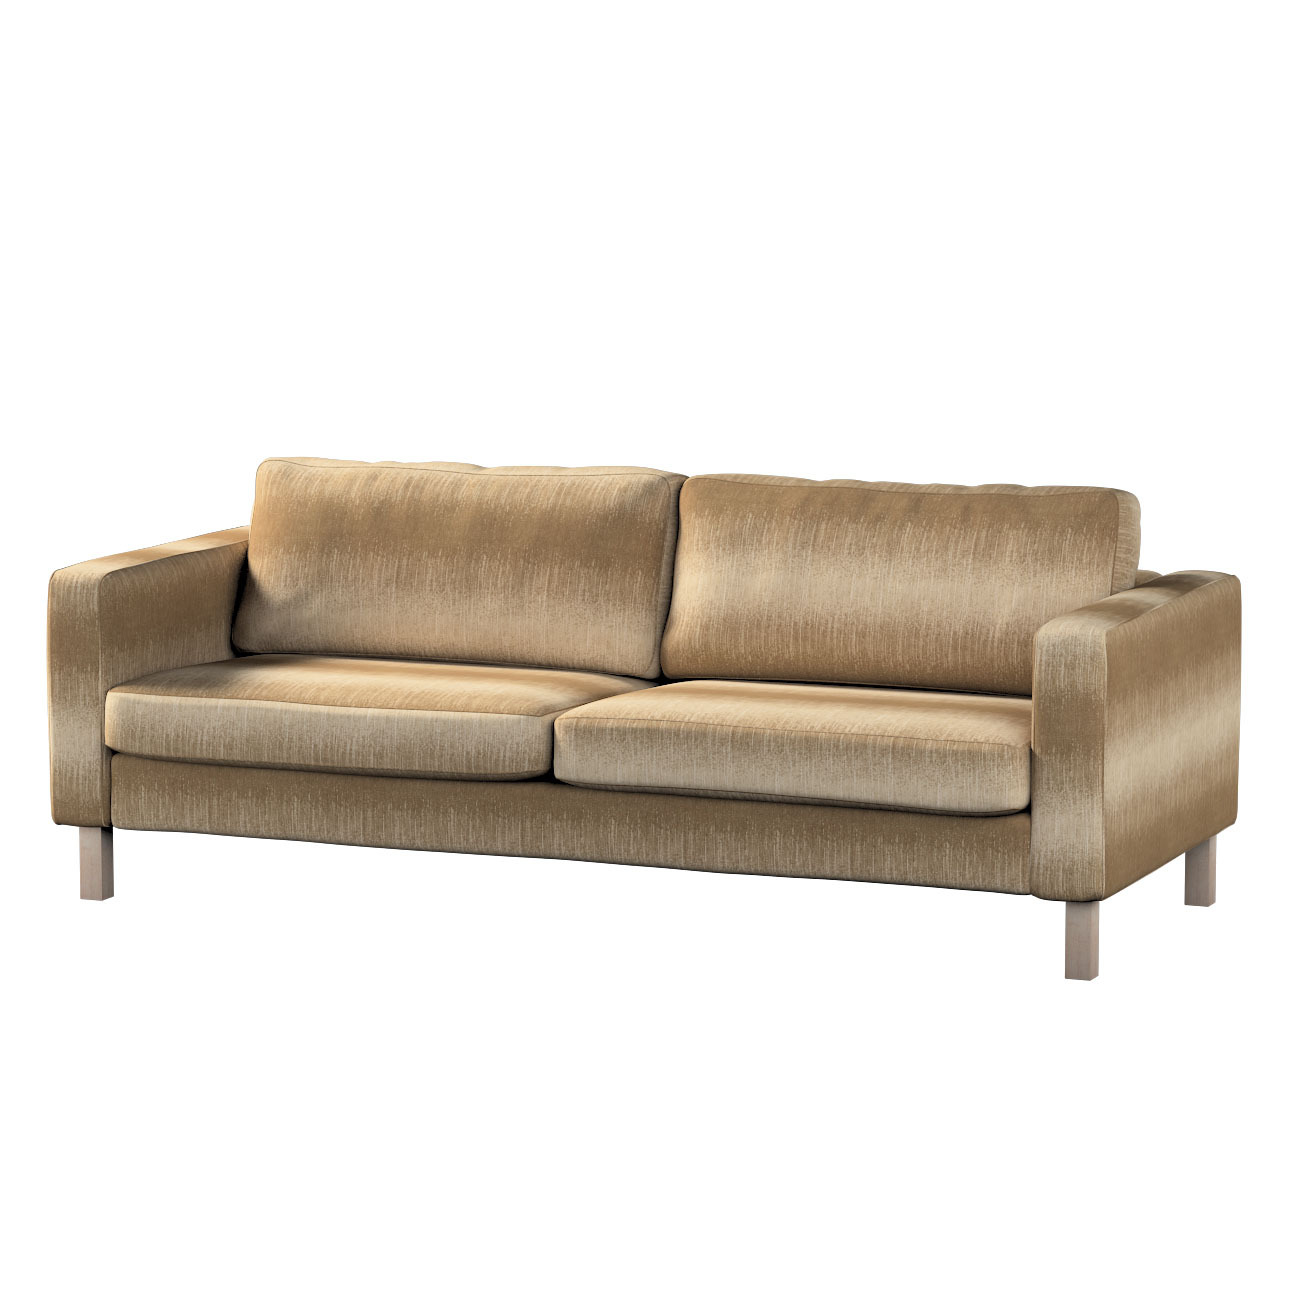 Bezug für Karlstad 3-Sitzer Sofa nicht ausklappbar, kurz, creme-beige, Bezu günstig online kaufen